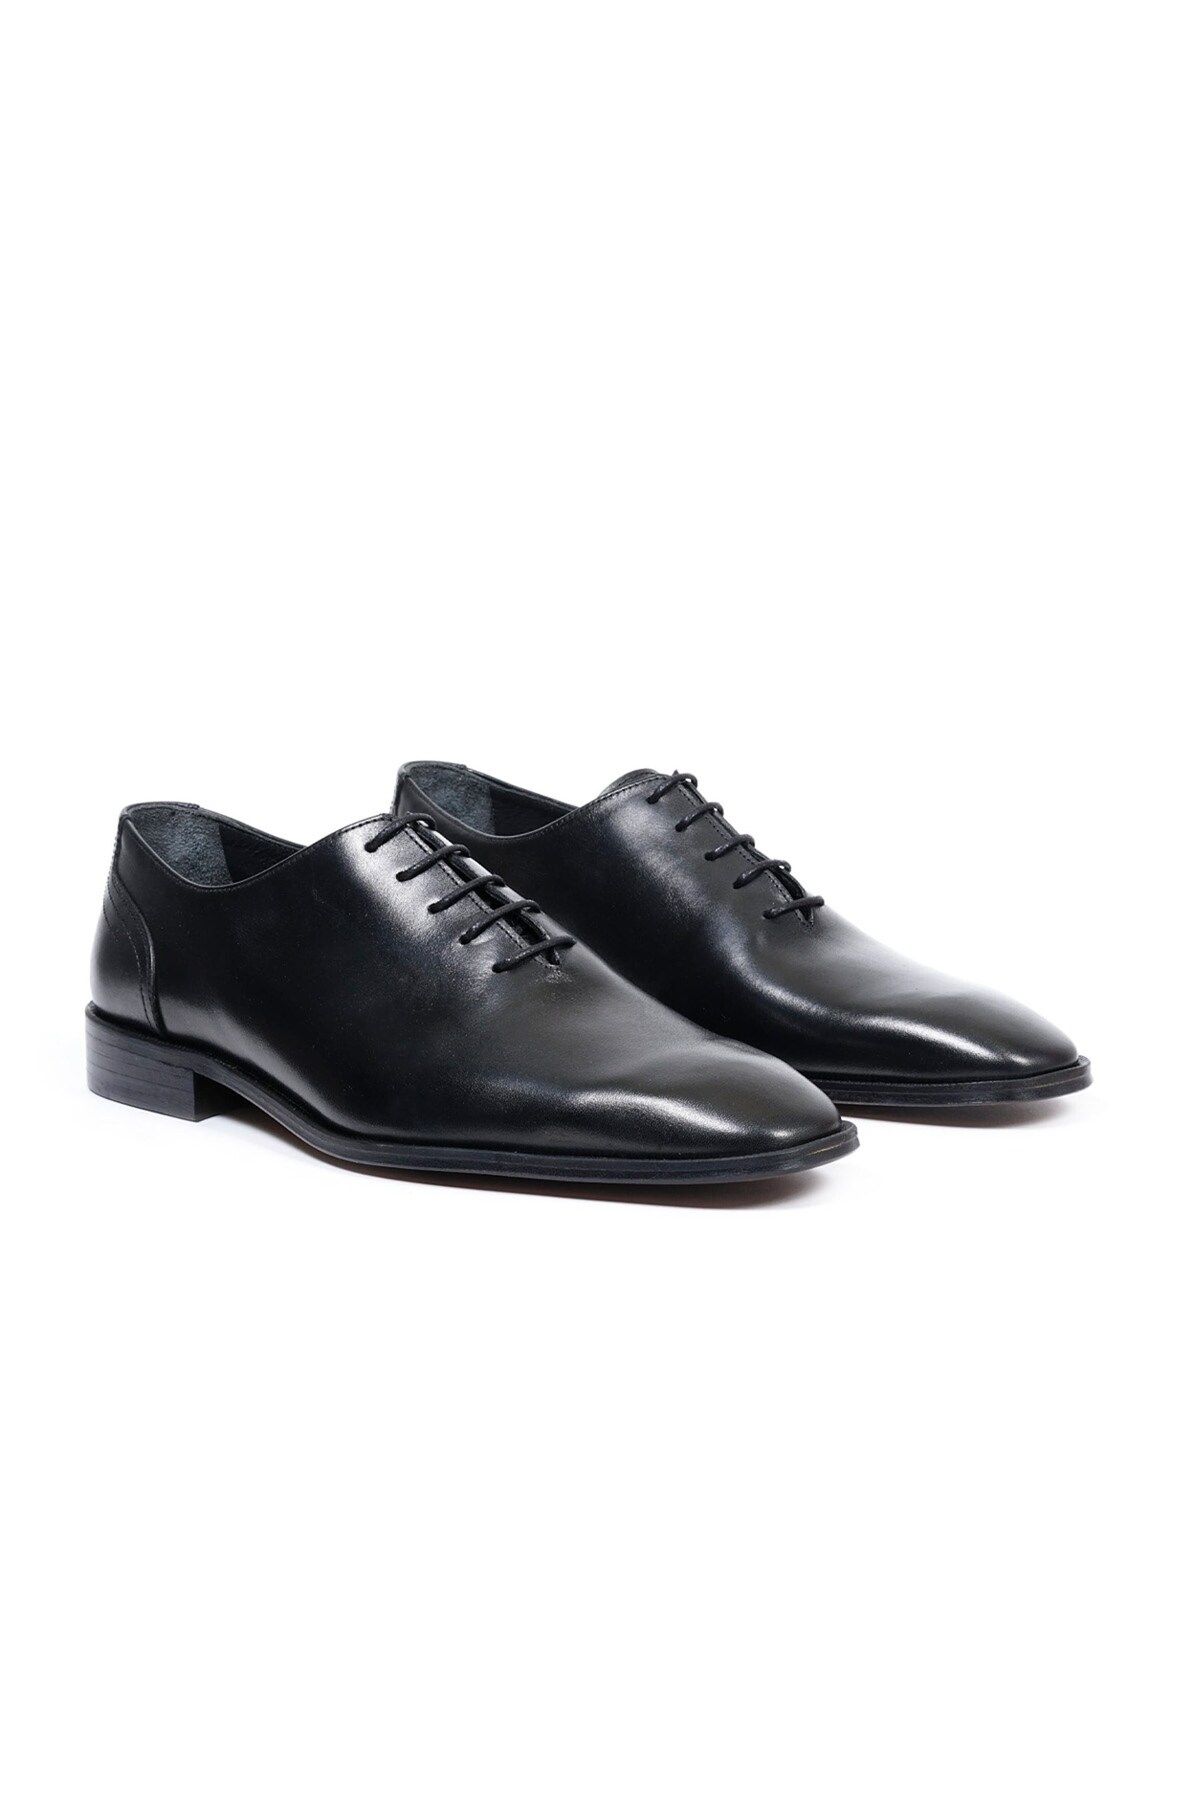 Ayakkabıhane Kösele Taban İçi Dışı Hakiki Deri Tarz Siyah Erkek Klasik Ayakkabı AHMSKL00088950